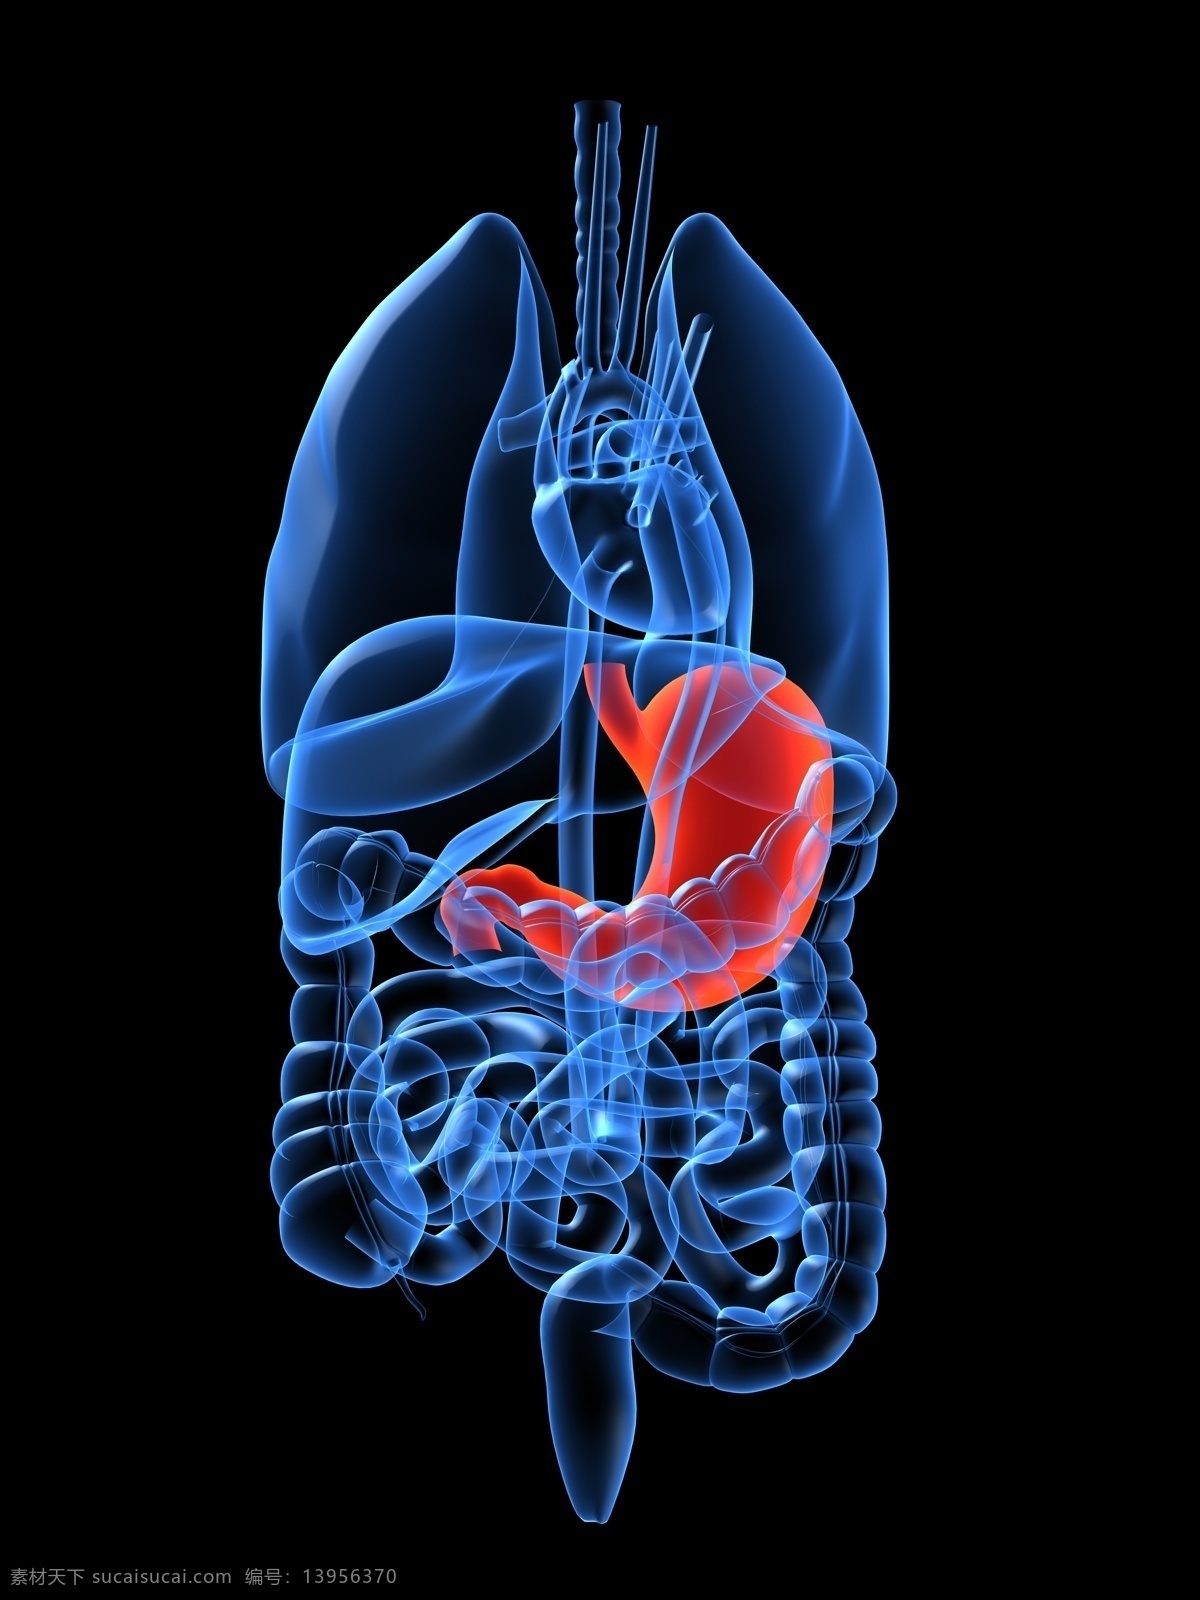 技 科 感 光谱 人体 器官 胃部 刨 图 技科感 人体器官 人体素材